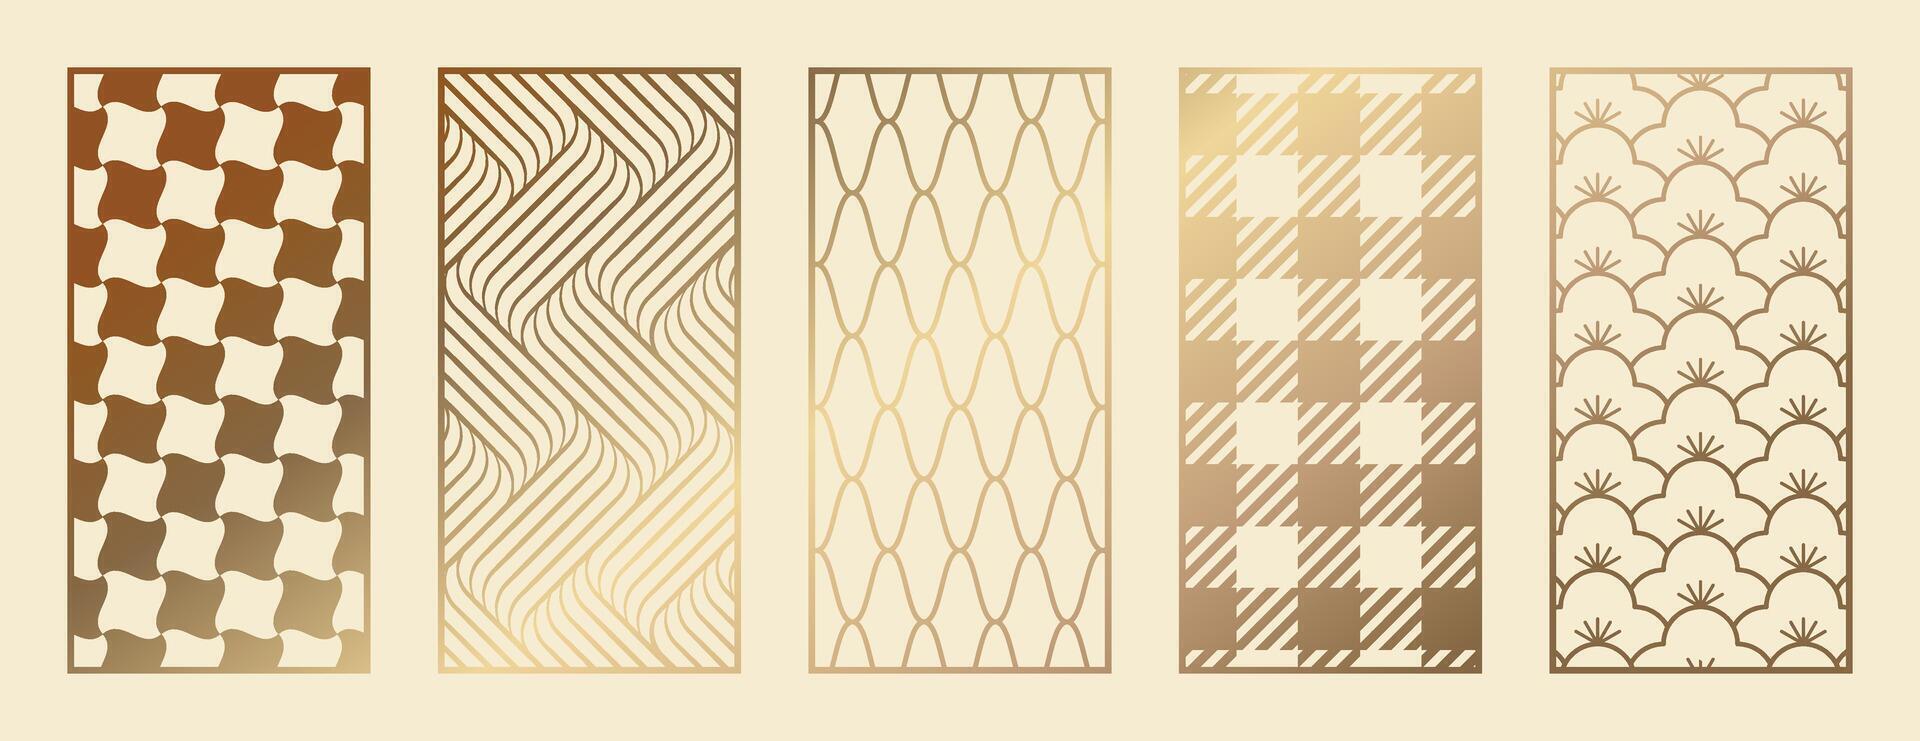 abstract lijn kunst en bloem patroon. laser besnoeiing met lijn ontwerp patroon. ontwerp voor hout snijwerk, muur paneel decor, metaal snijden, muur kunst, Hoes achtergrond, behang en spandoek. vector